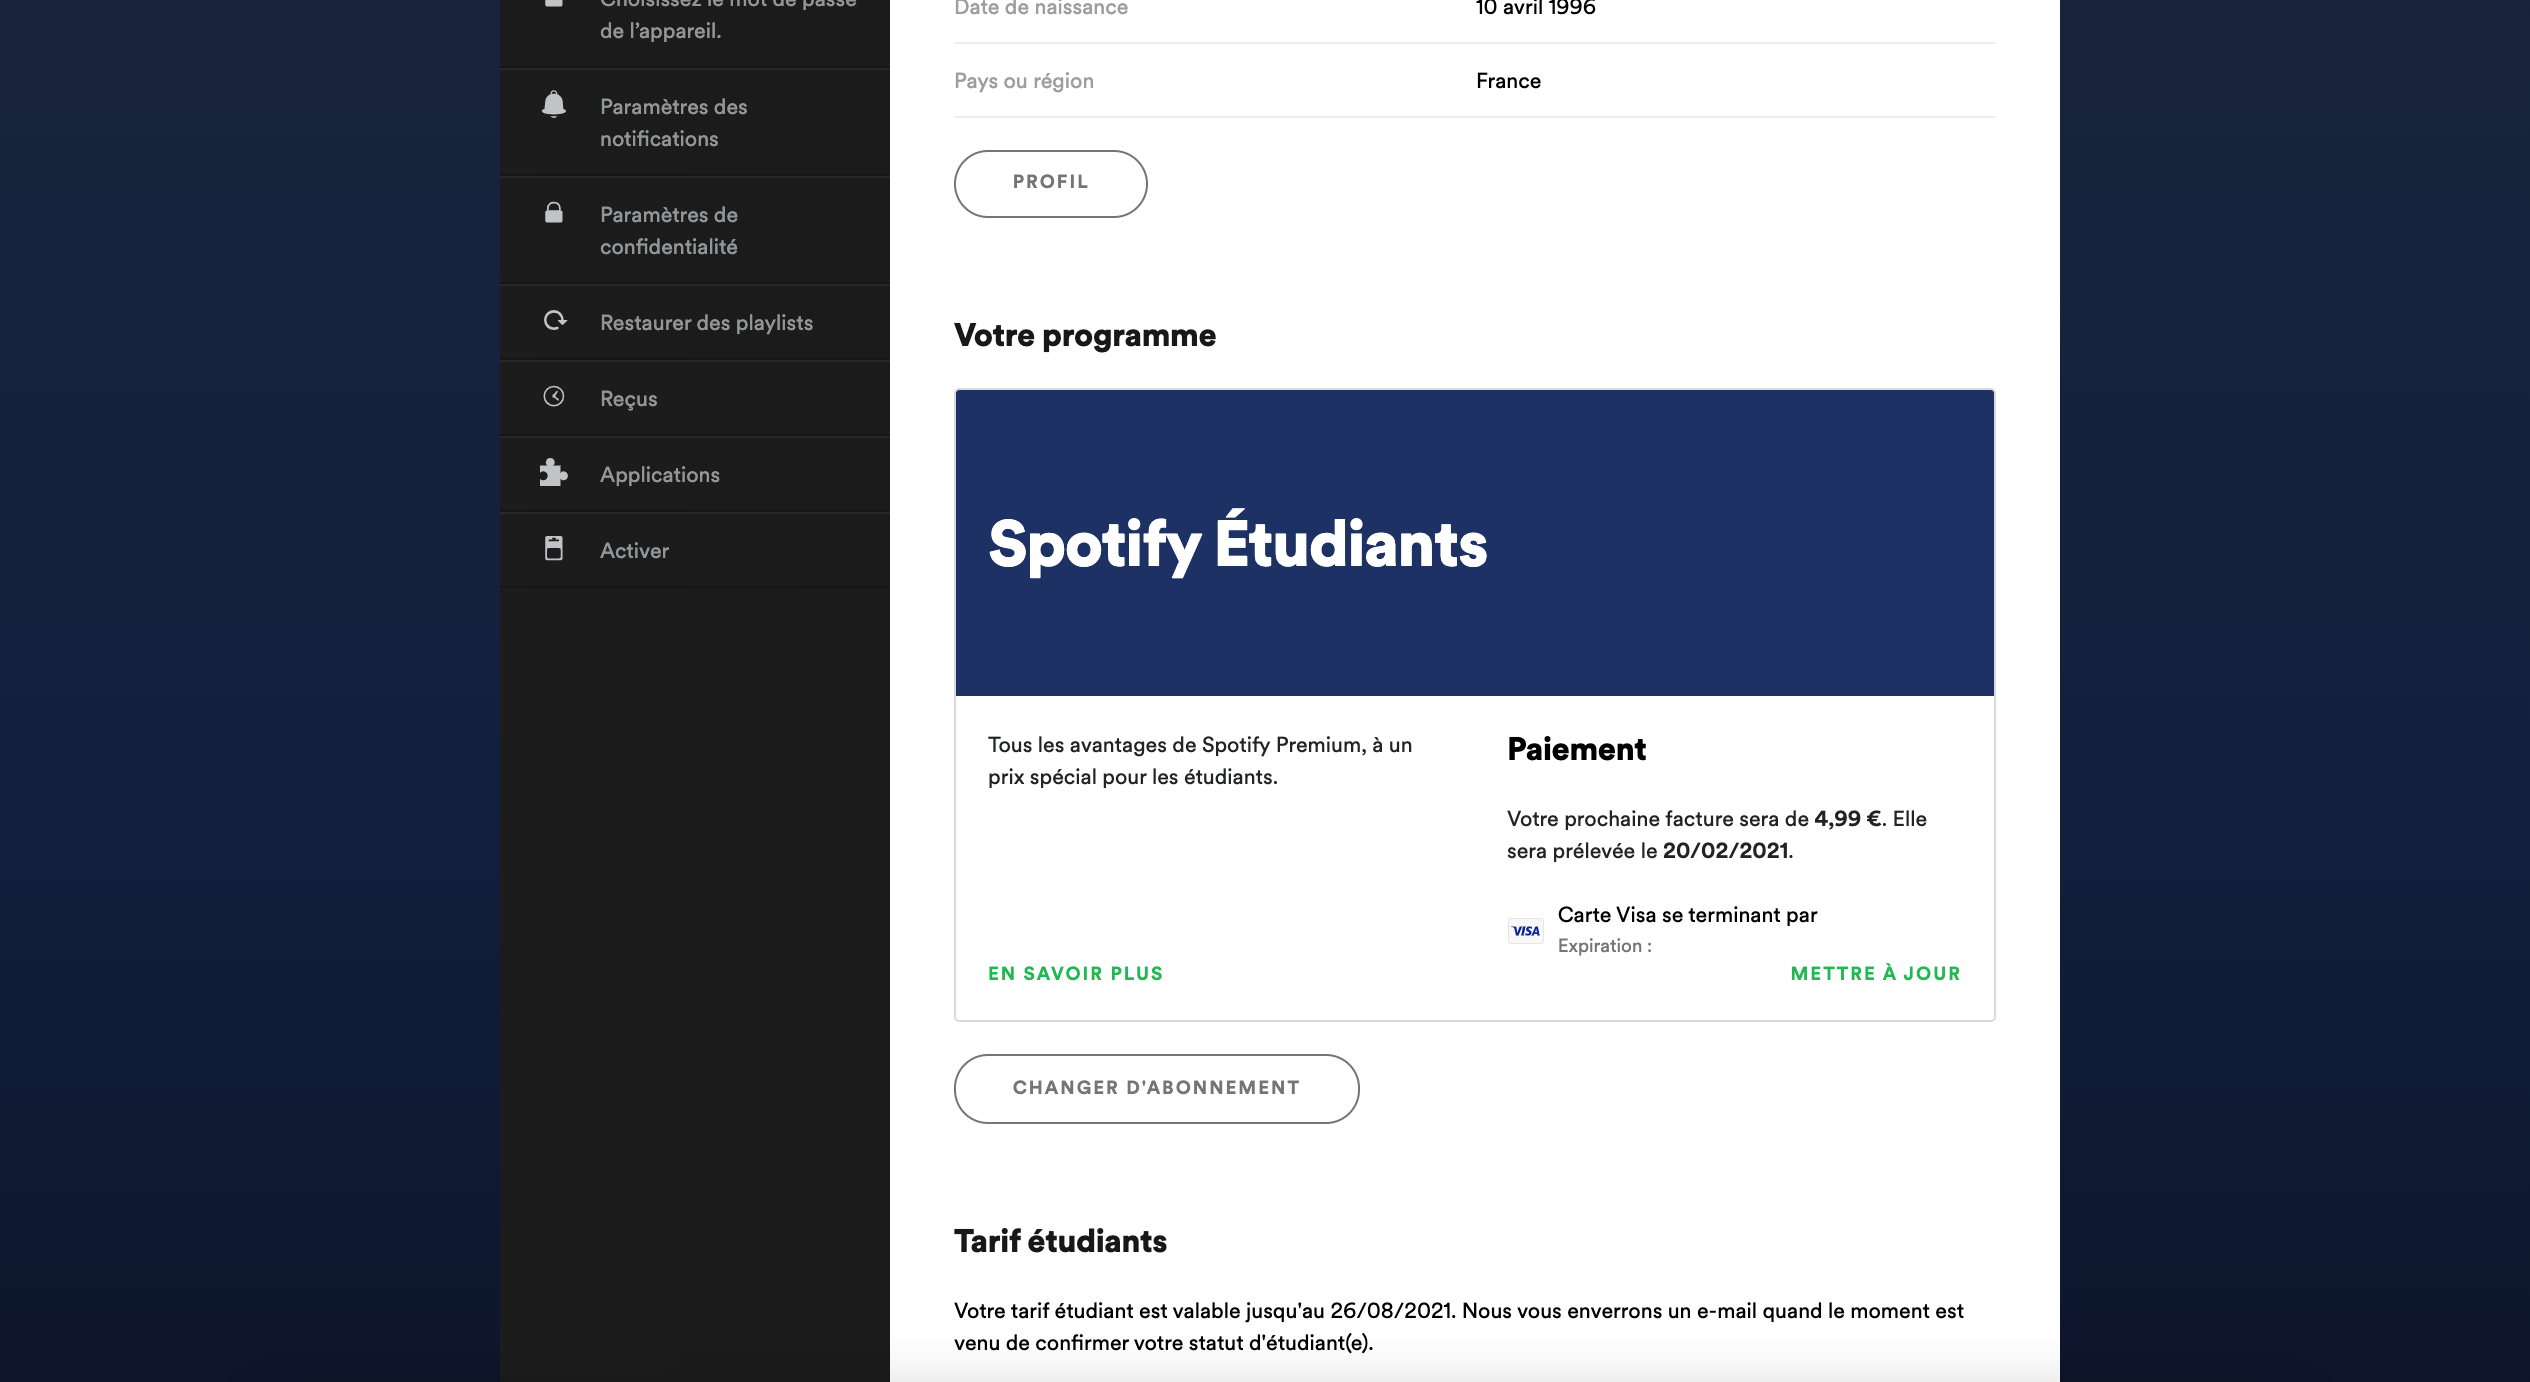 Résiliation Spotify Etape 1: Clic sur changer abonnement